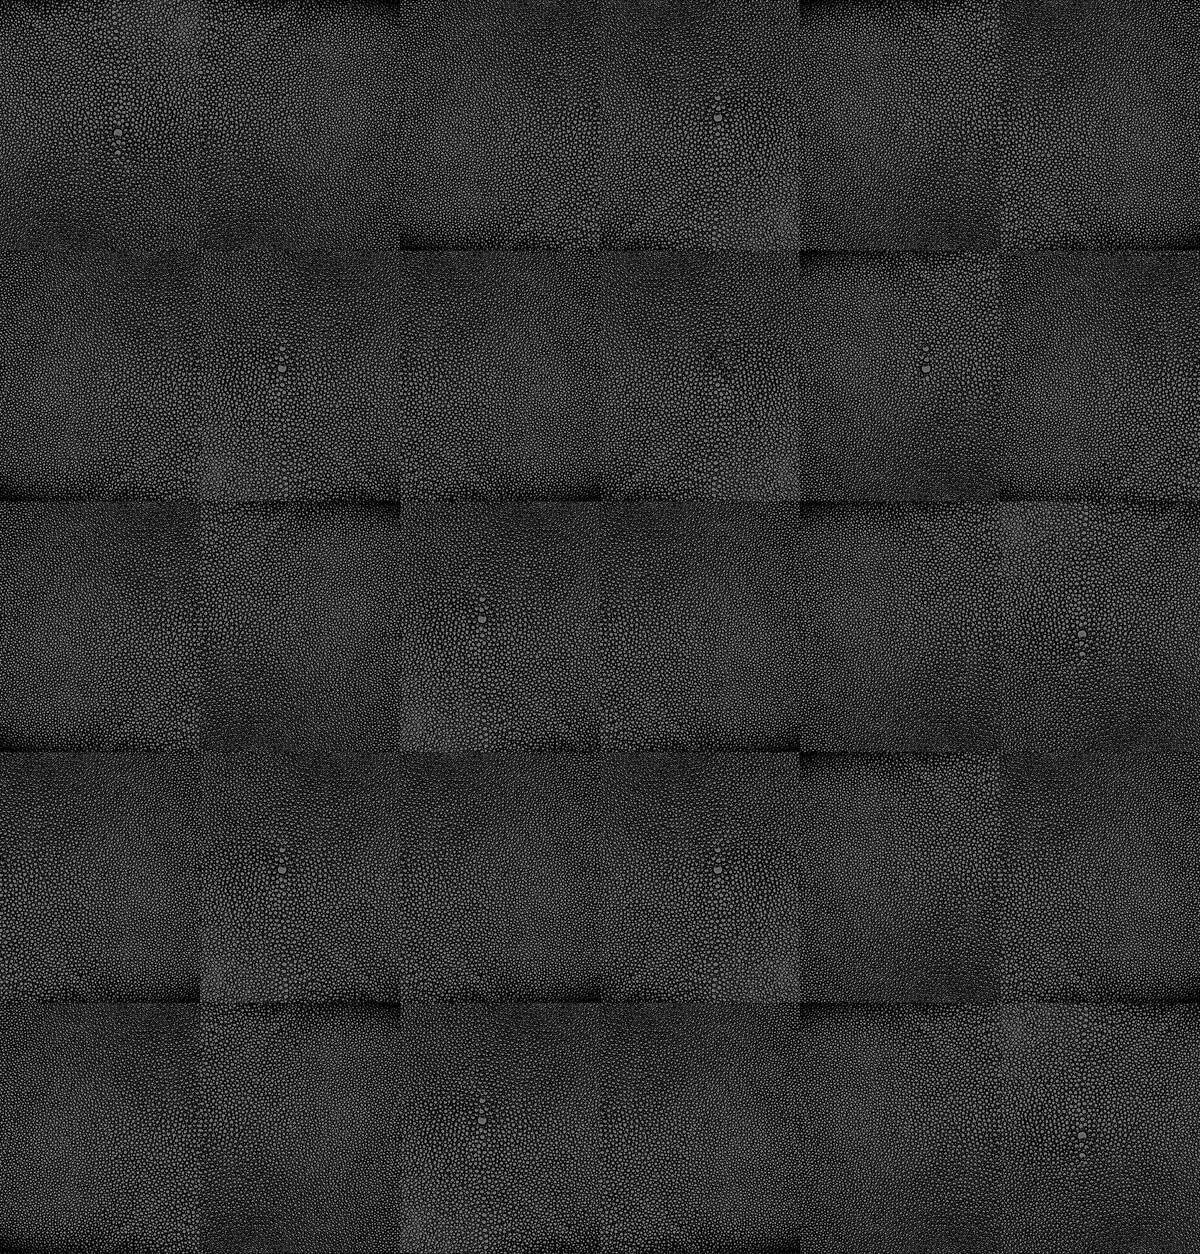 Shagreen pattern in midnight